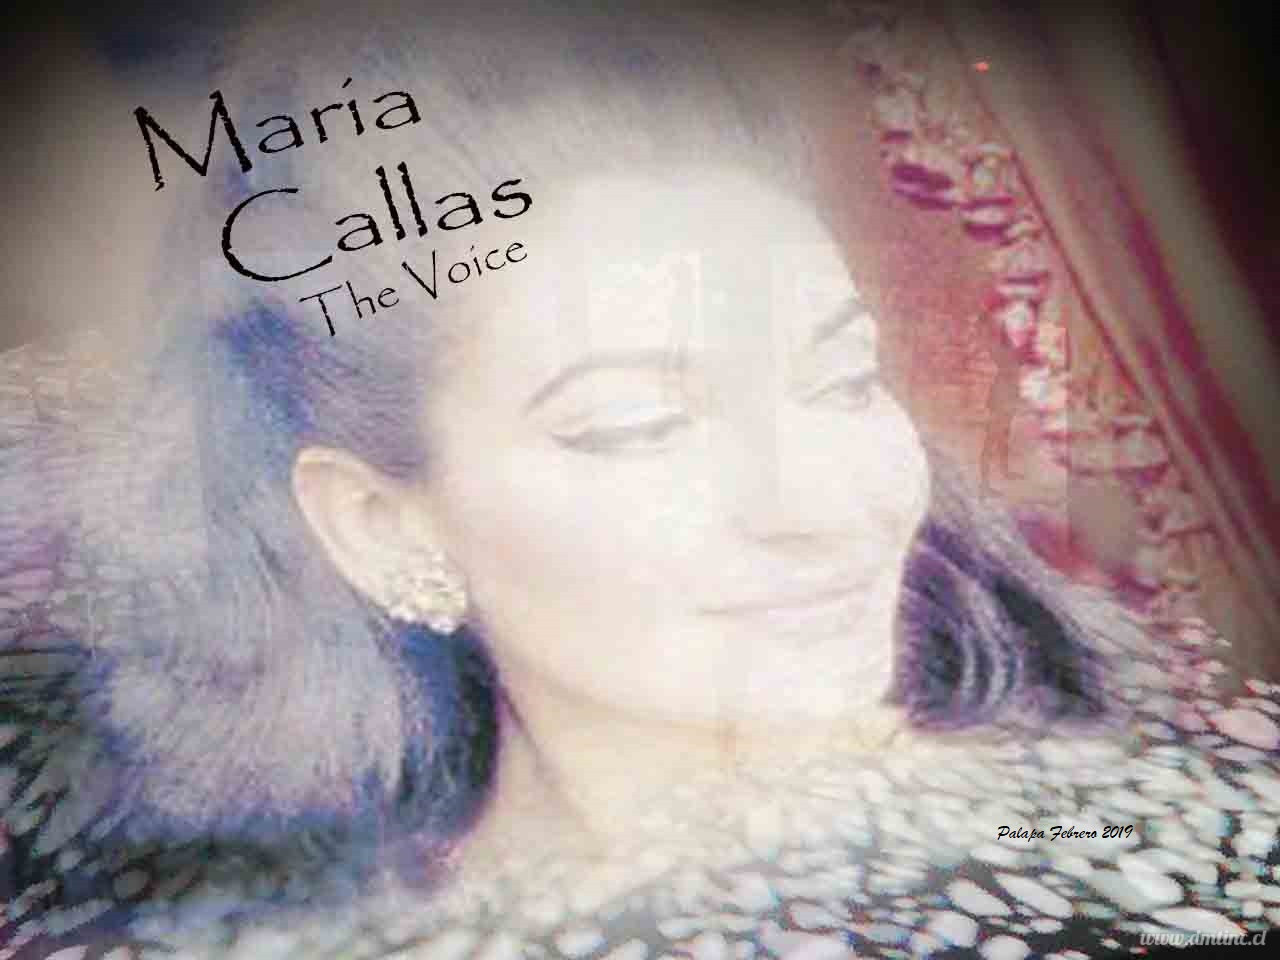 MARIA-CALLAS-THE-VOICE451822fd4ab9a2d5.jpg